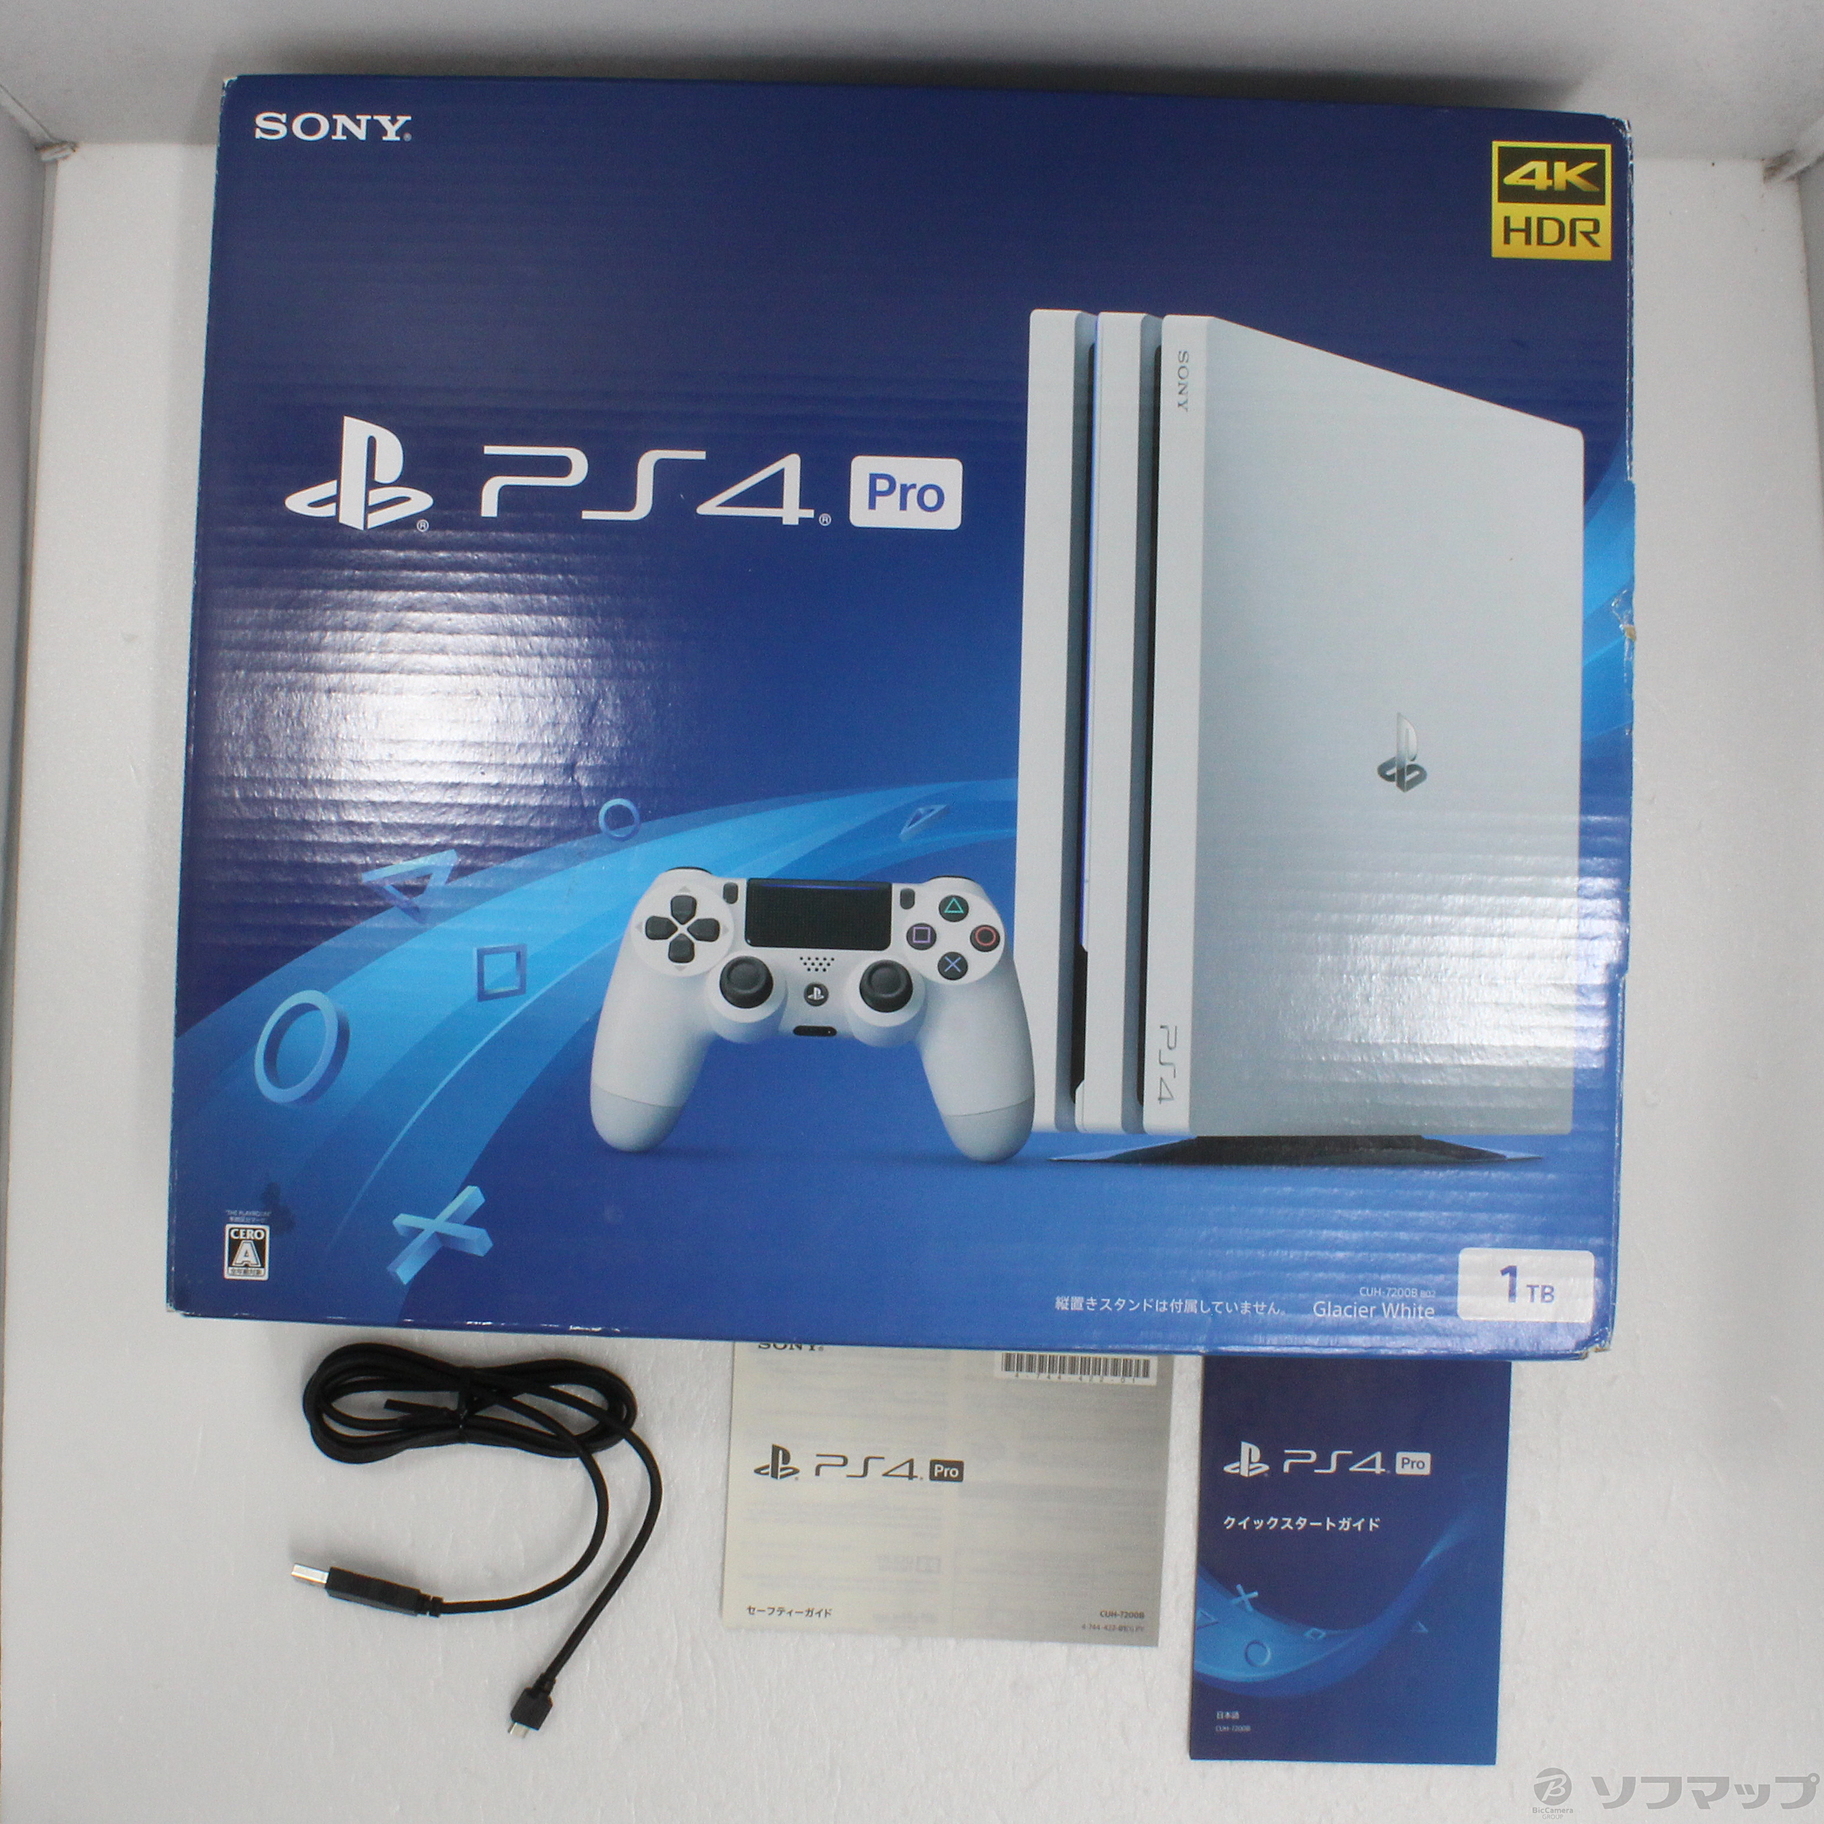 中古】PlayStation 4 Pro グレイシャー・ホワイト 1TB CUH-7200BB02